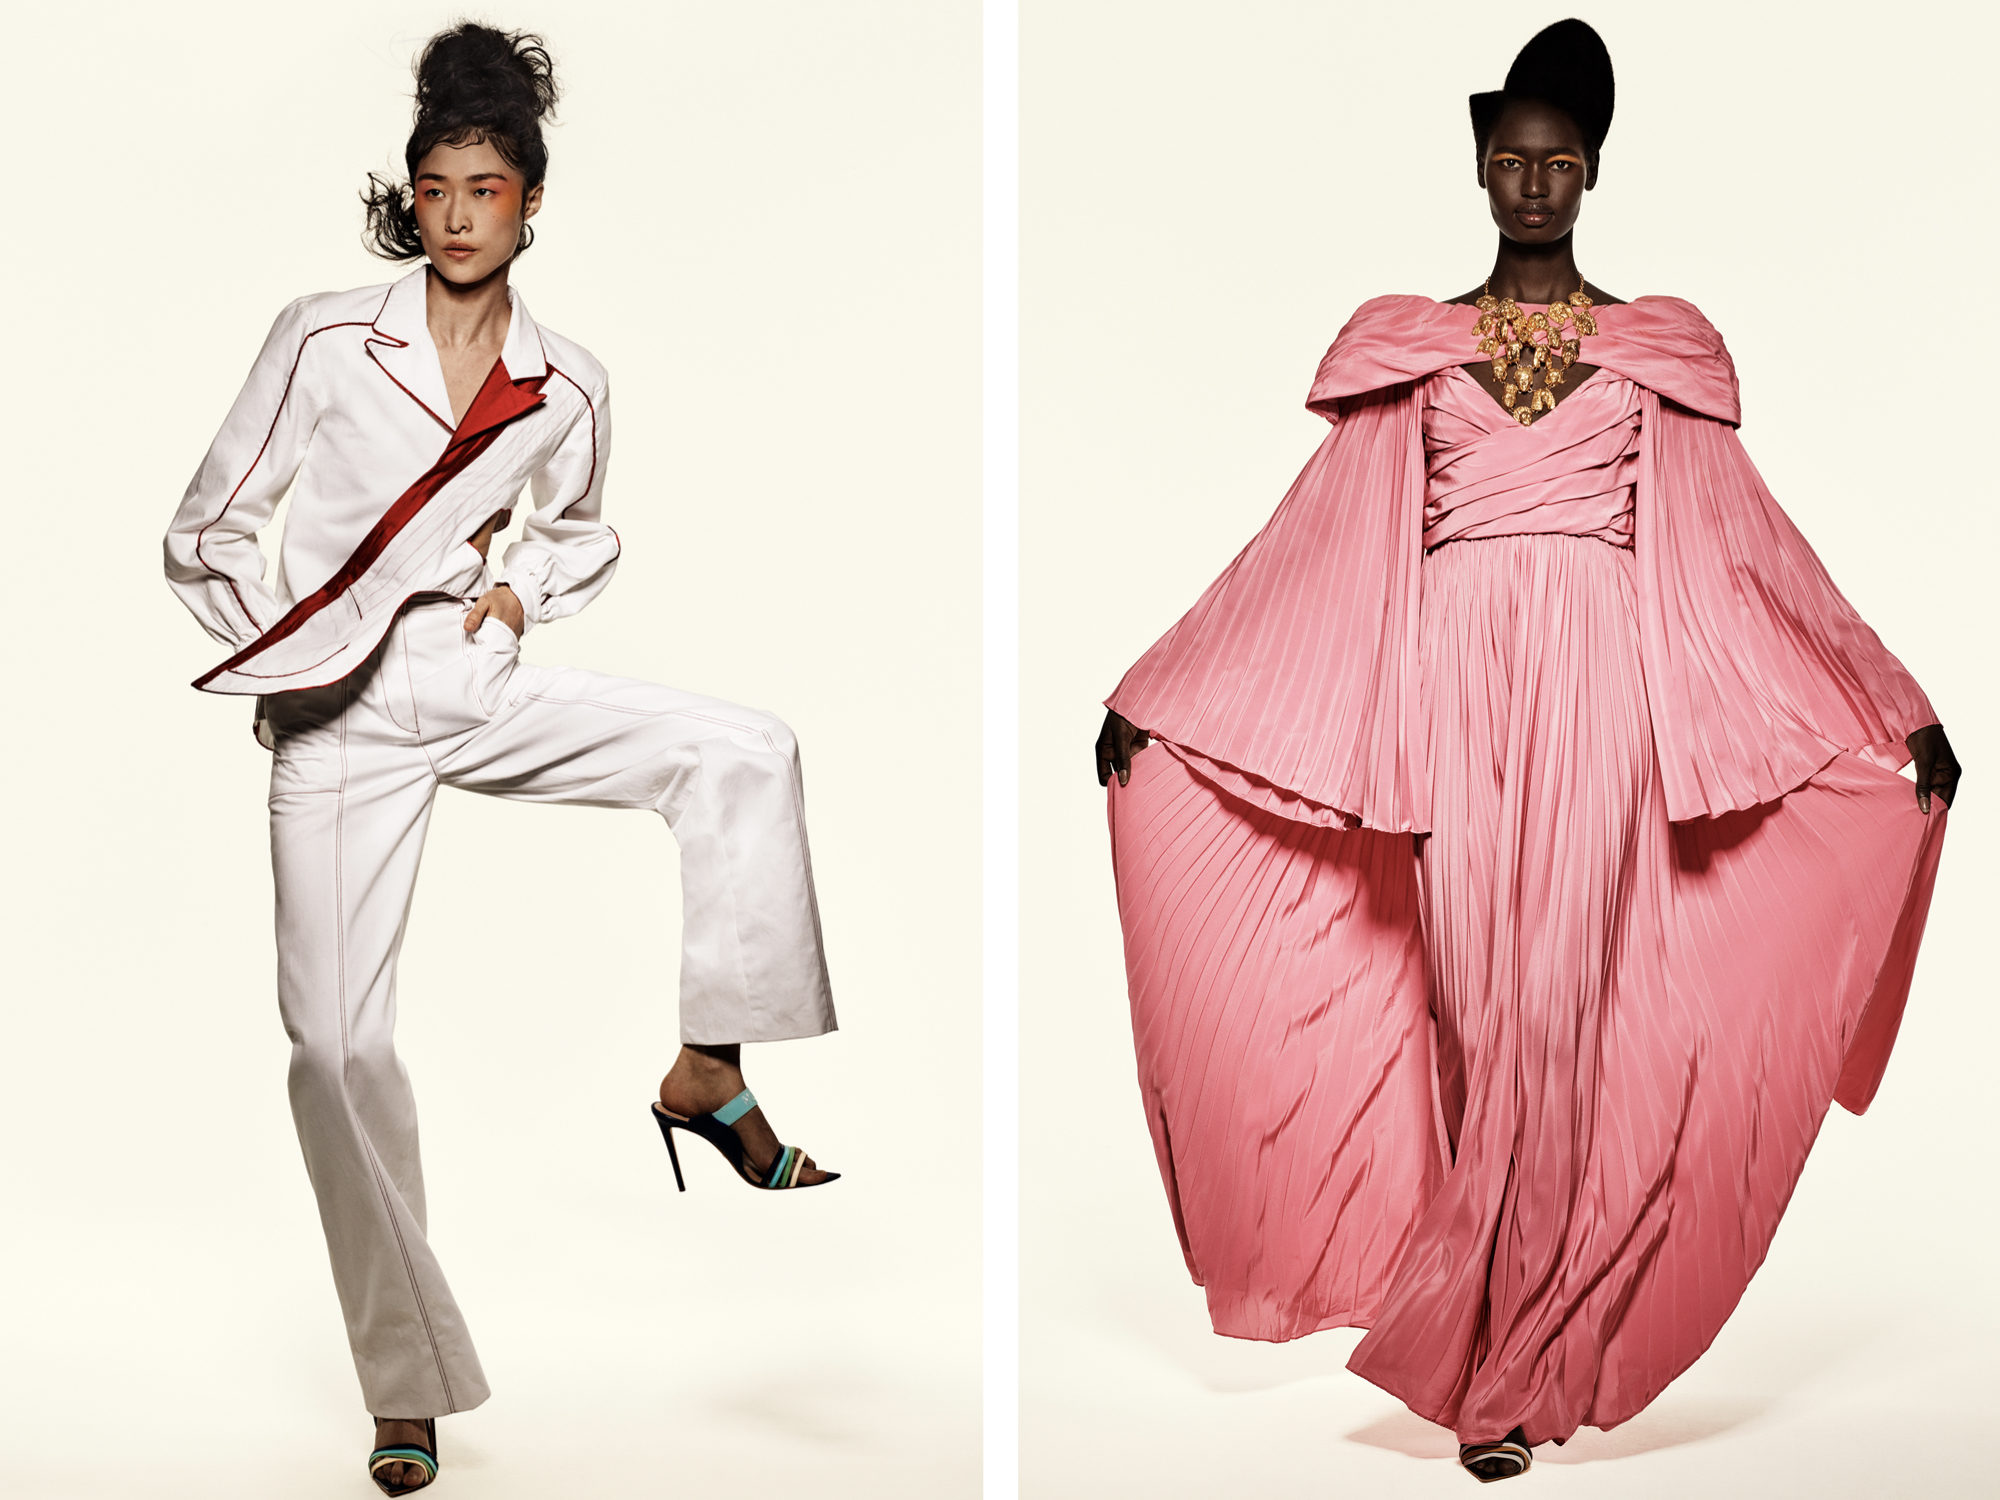 Designer Kerby Jean-Raymond brings 'Black Lives Matter' to N.Y.